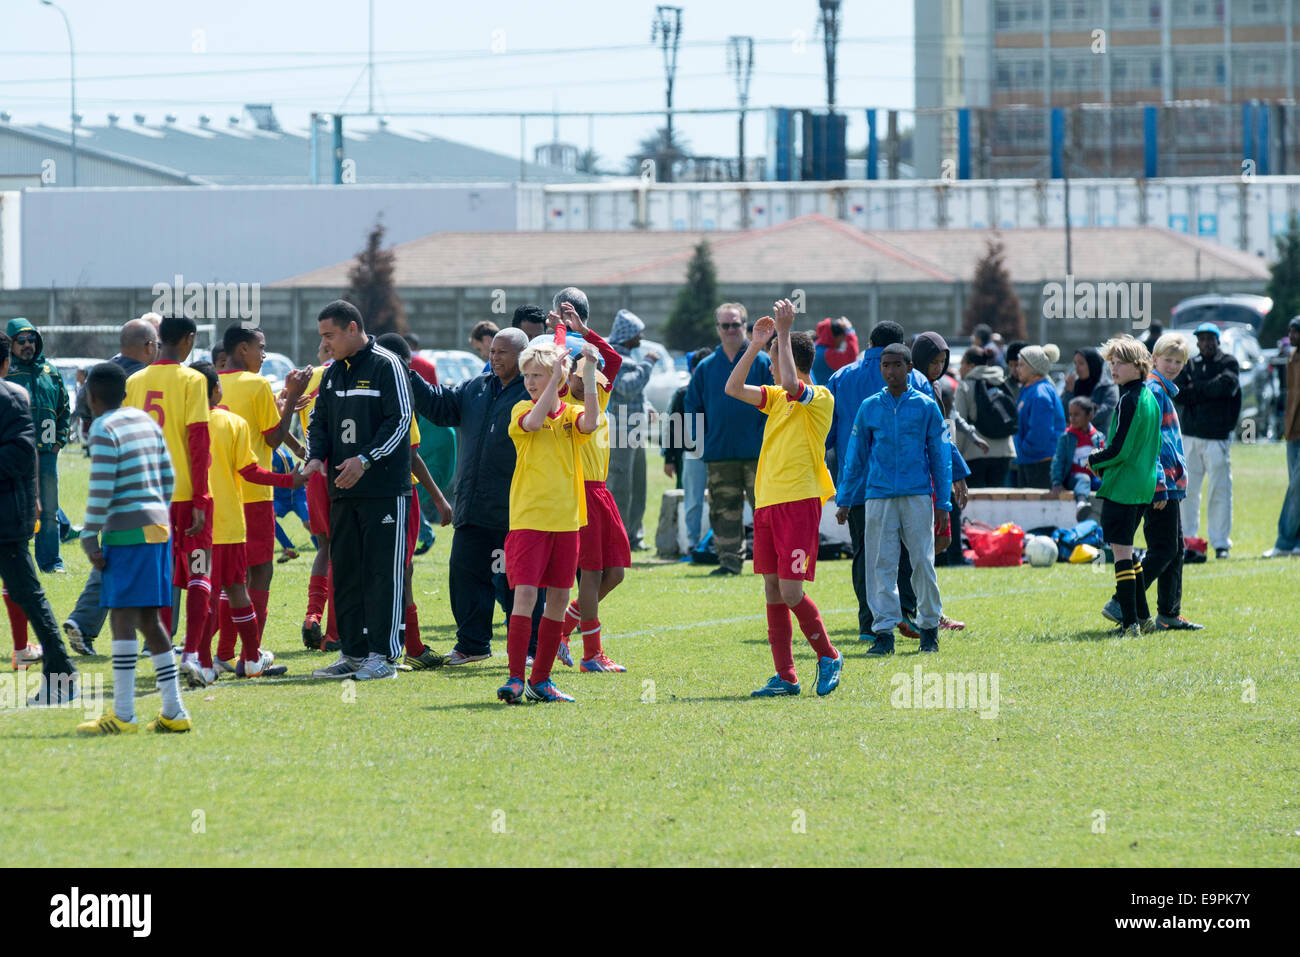 Joueurs de football junior applaudir aux fans après le match, Le Cap, Afrique du Sud Banque D'Images